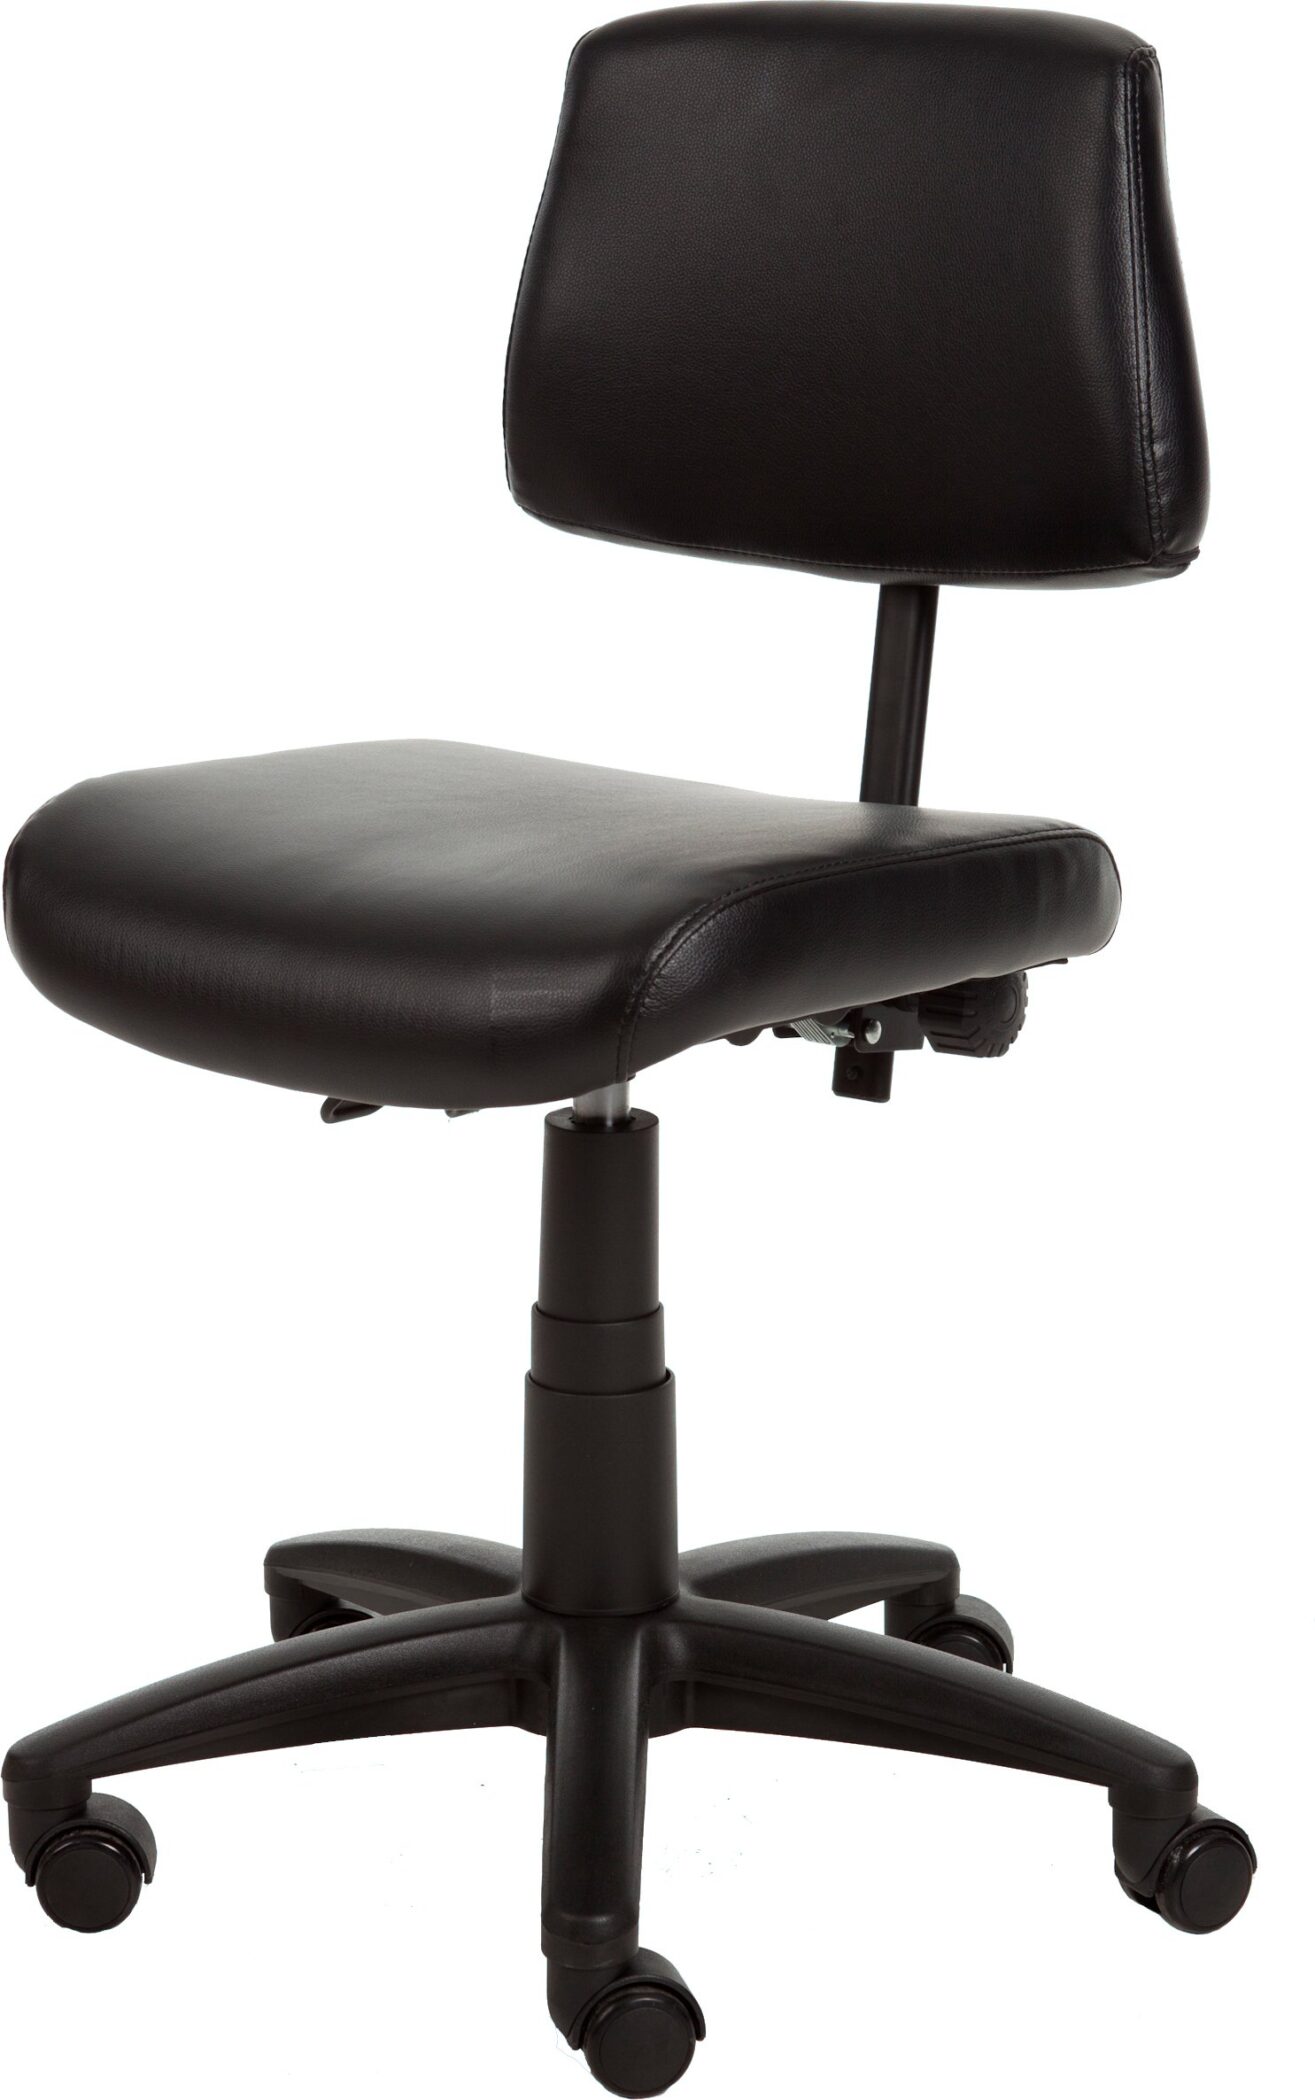 Leidsterstoel - bureaustoel comfort zwart